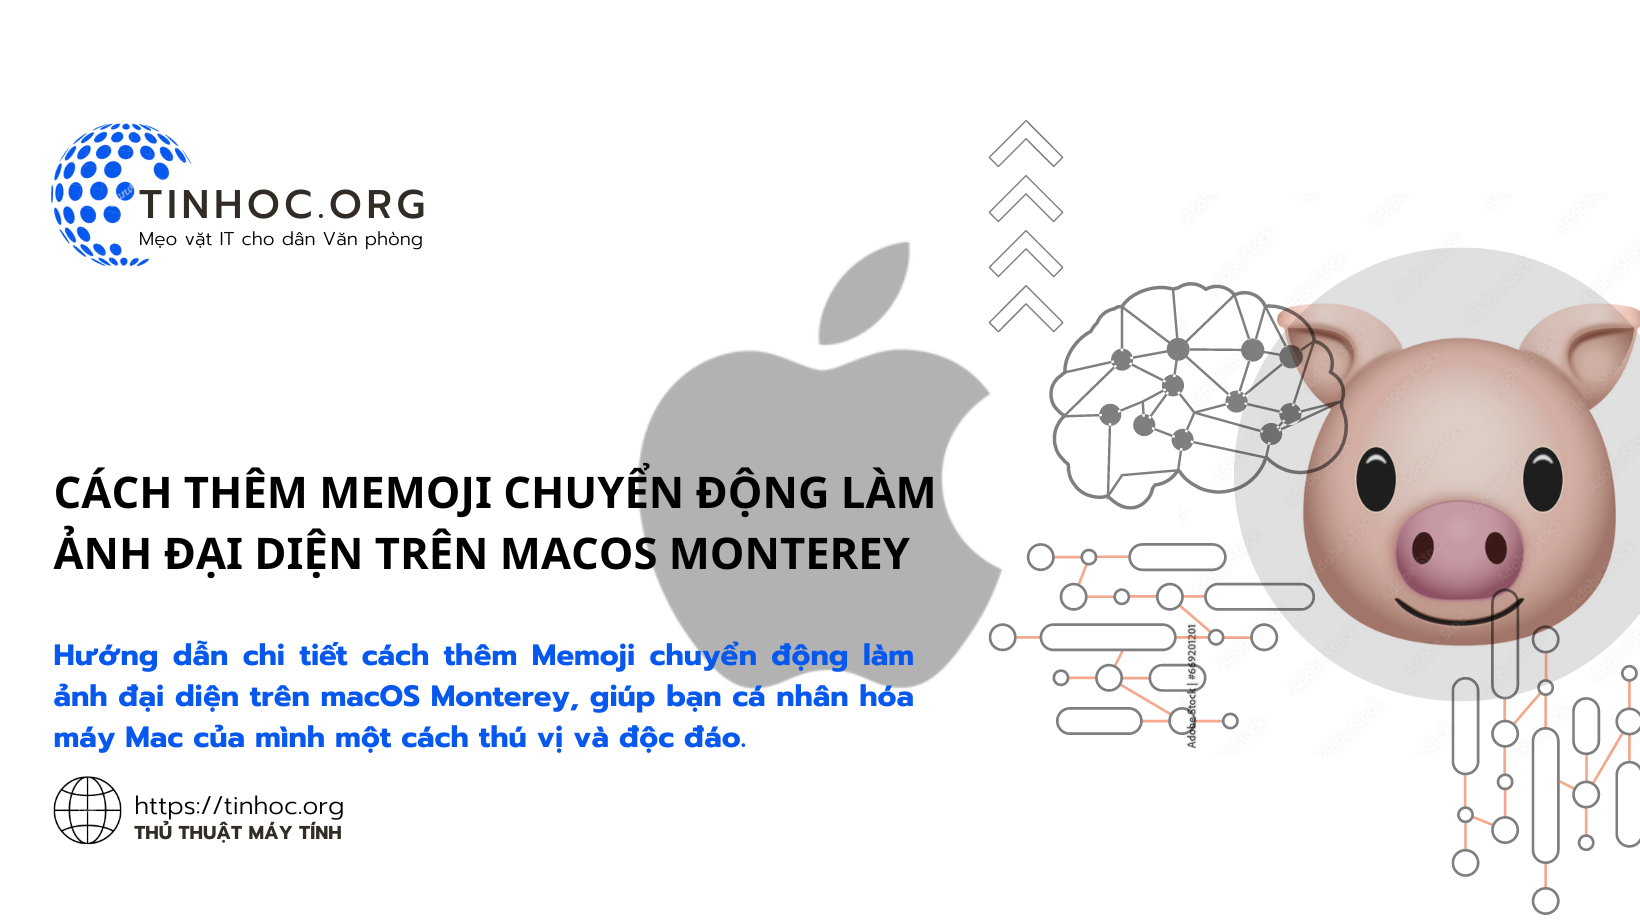 Cách thêm Memoji chuyển động làm ảnh đại diện trên macOS Monterey